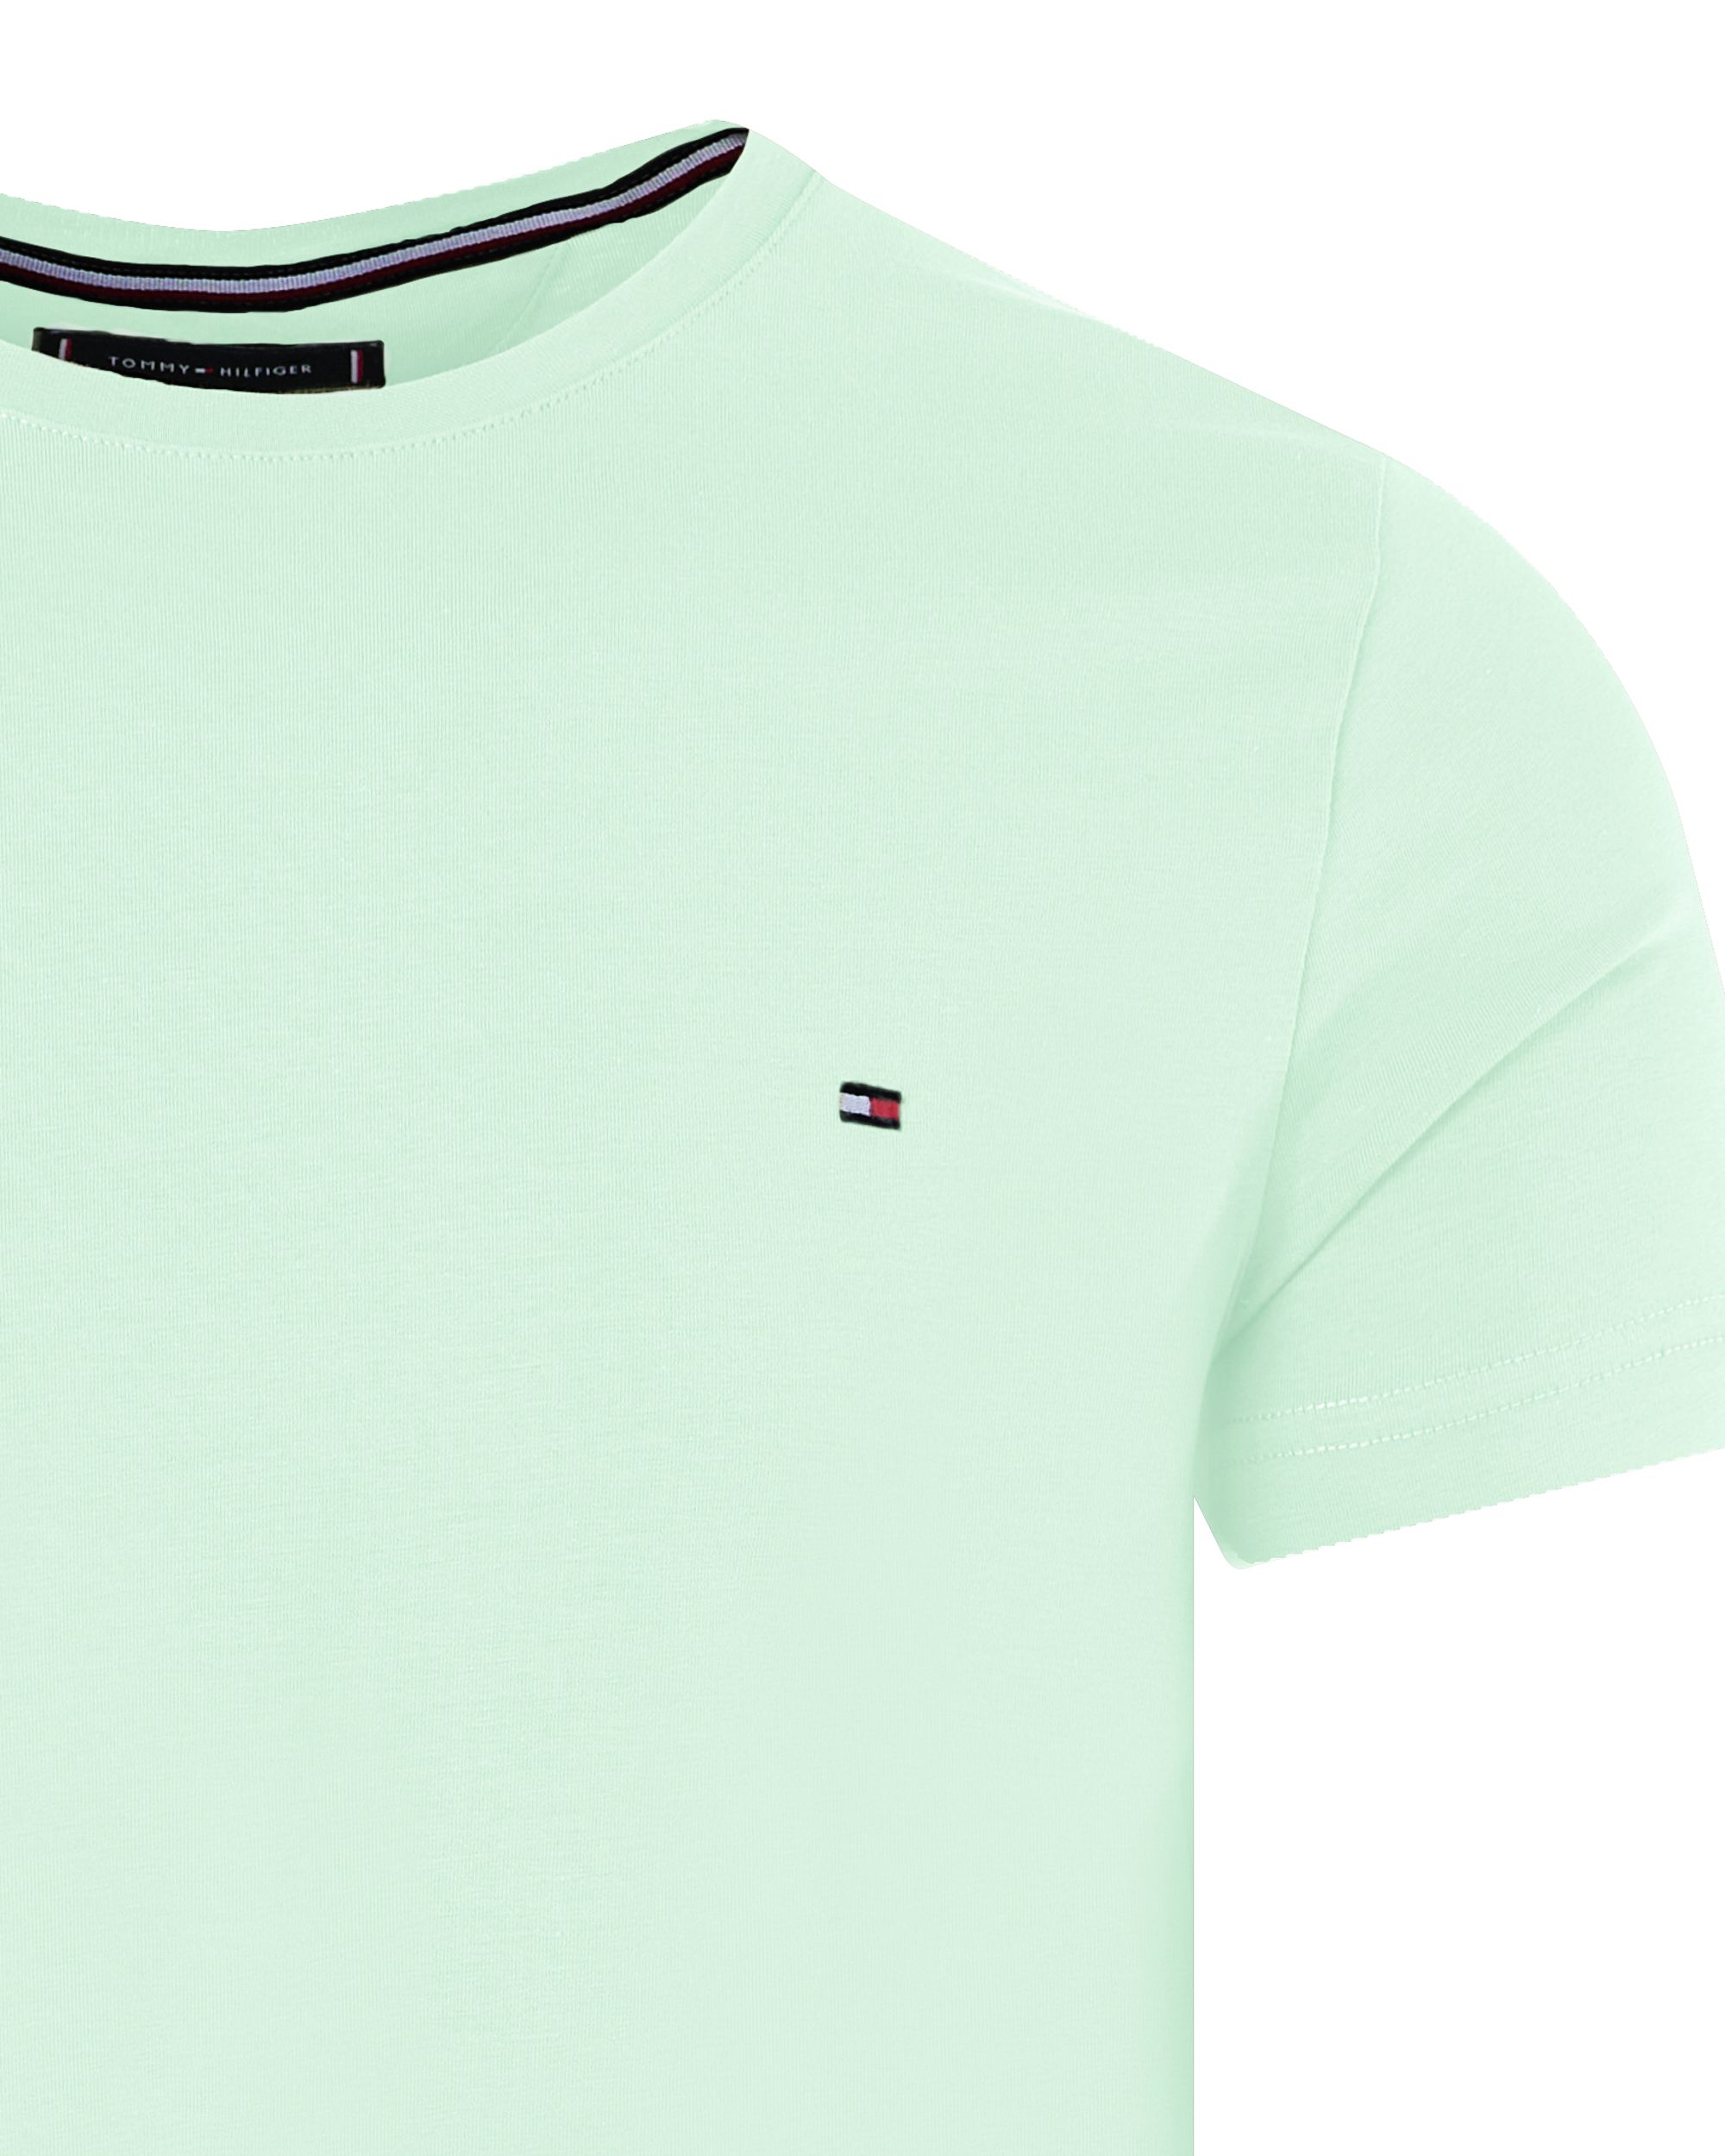 Tommy Hilfiger Menswear T-shirt KM Mint 094698-001-L